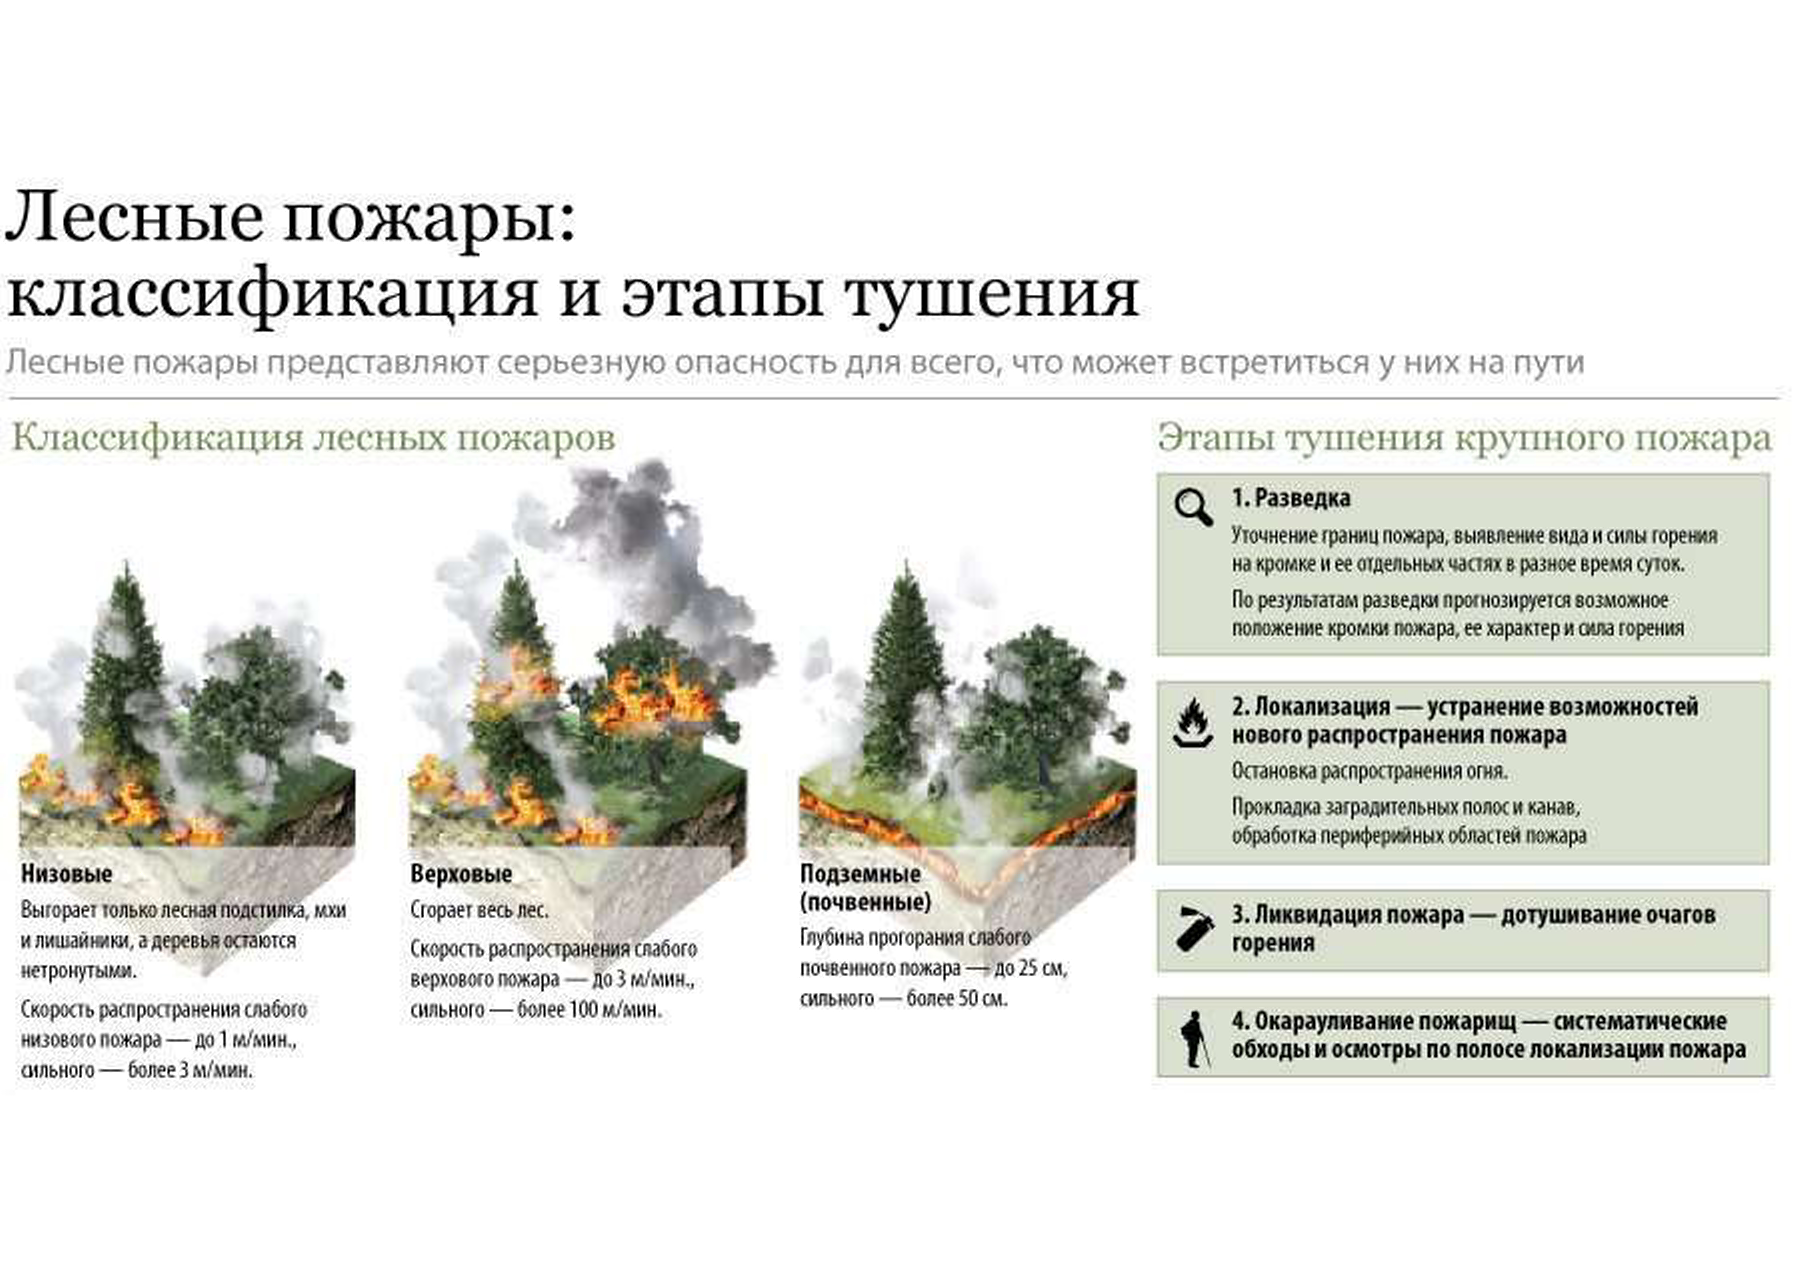 В следствии лесных пожаров. Схема ликвидации пожаров лесных. Классификация лесных пожаров схема. Классификация лесных и торфяных пожаров по силе. Причины лесных пожаров схема.